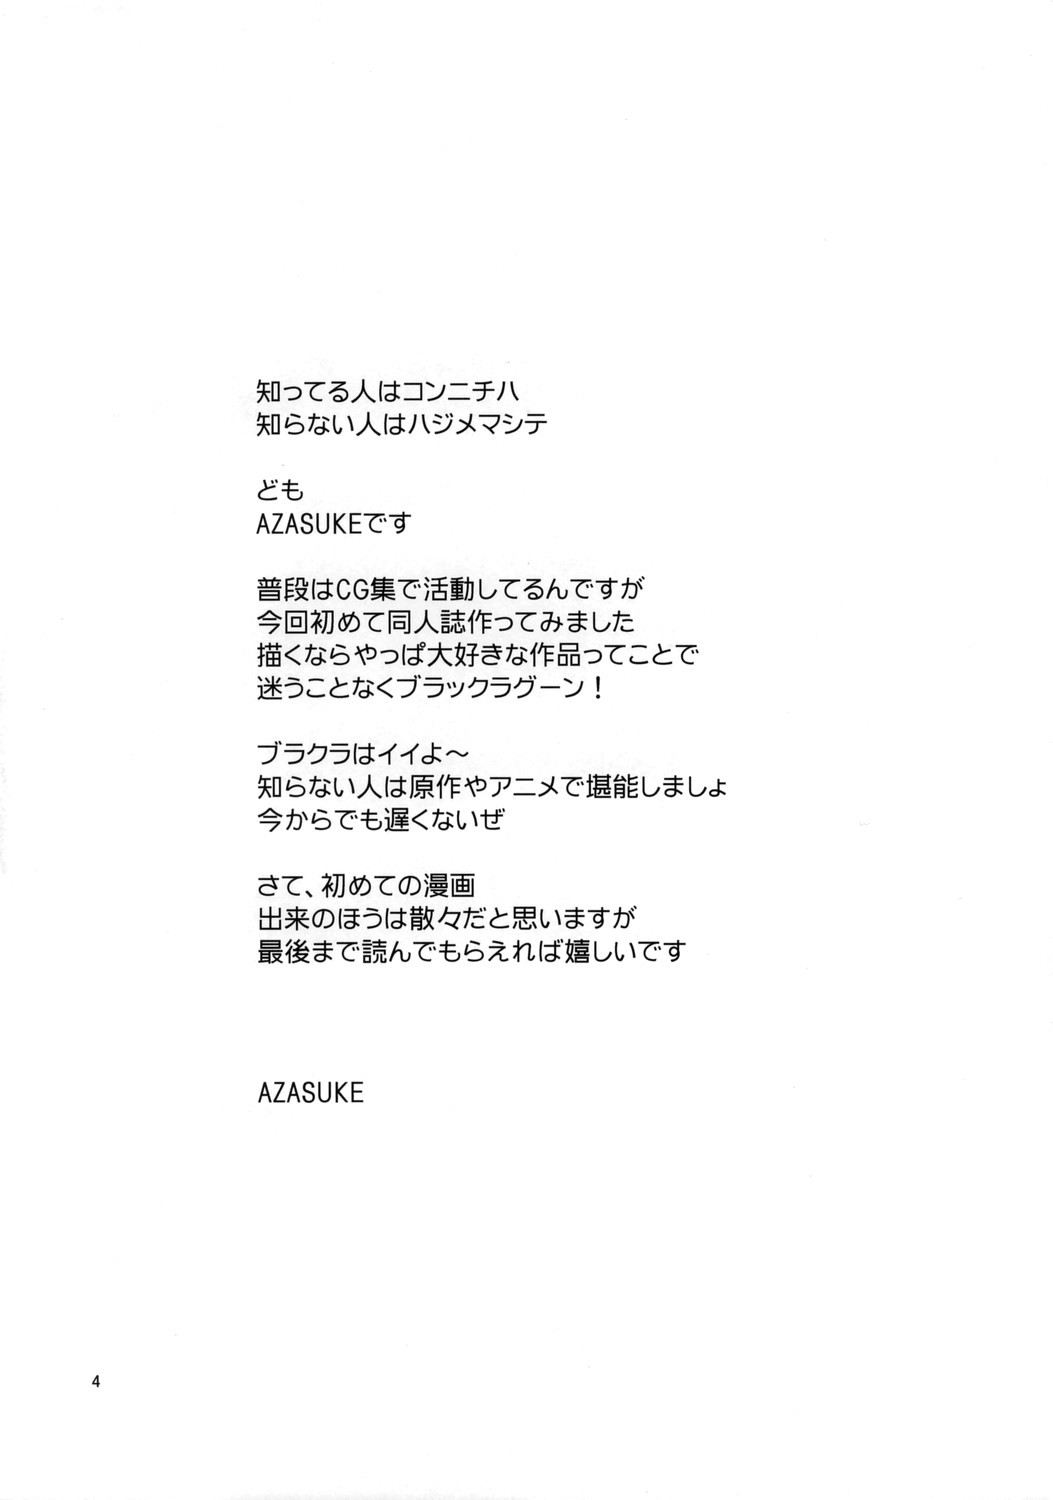 [Azasuke Wind] Distorted Love (Black Lagoon) [AZASUKE WIND] Distorted Love (ブラック・ラグーン)